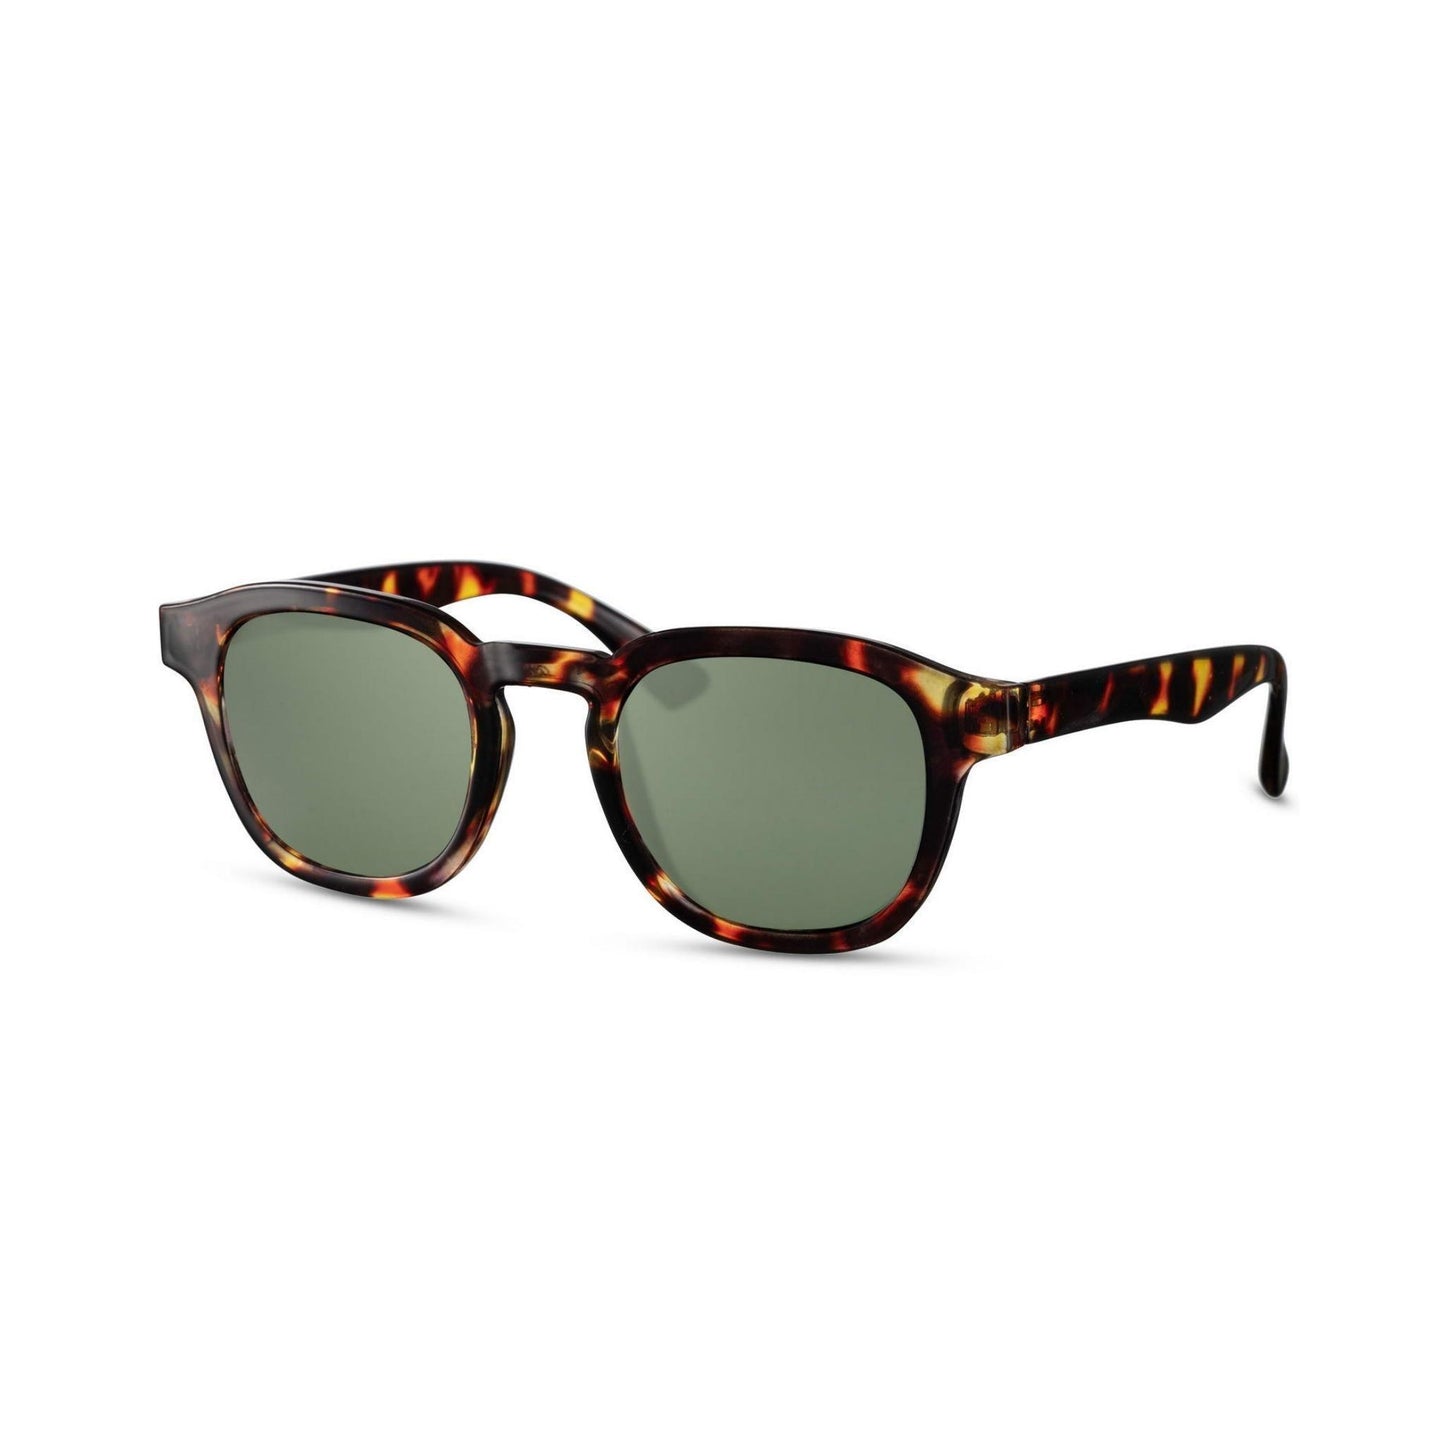 Γυαλιά ηλίου Montreal της Exposure Sunglasses με προστασία UV400 με καφέ σκελετό και πράσινο φακό.Πλάγια προβολή.